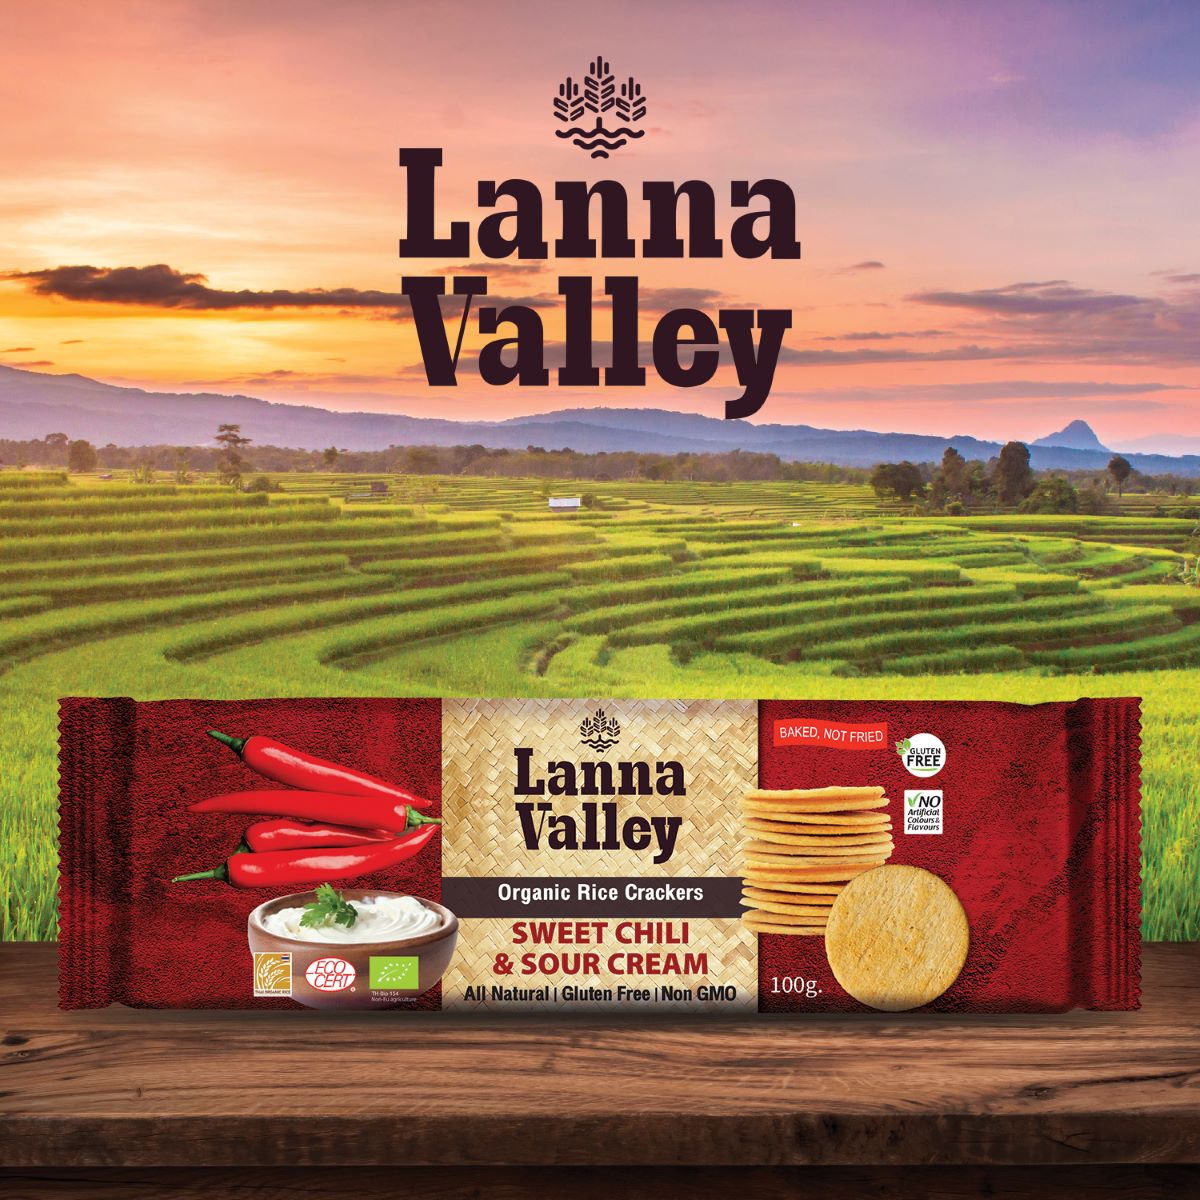 Bánh Gạo Hữu Cơ Lanna Valley (100g) - Organic Rice Cracker - Vị Truyền Thống, Vị BBQ, Vị Phô Mai, Vị Chua Cay